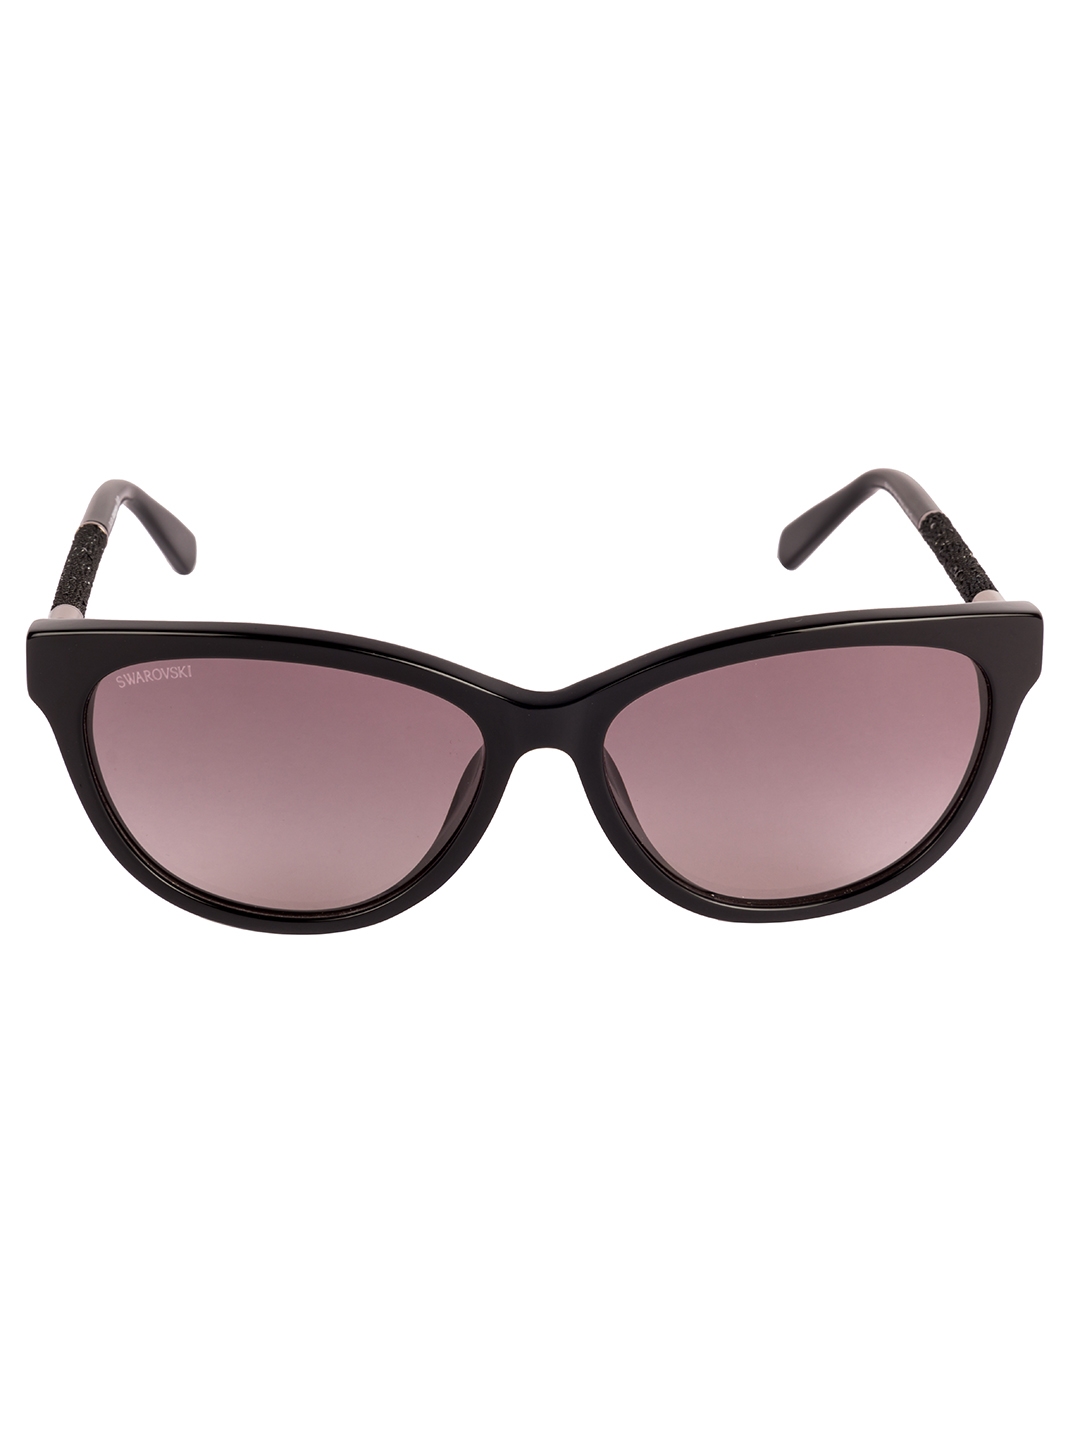 swarovski | Swarovski Square Sunglasses